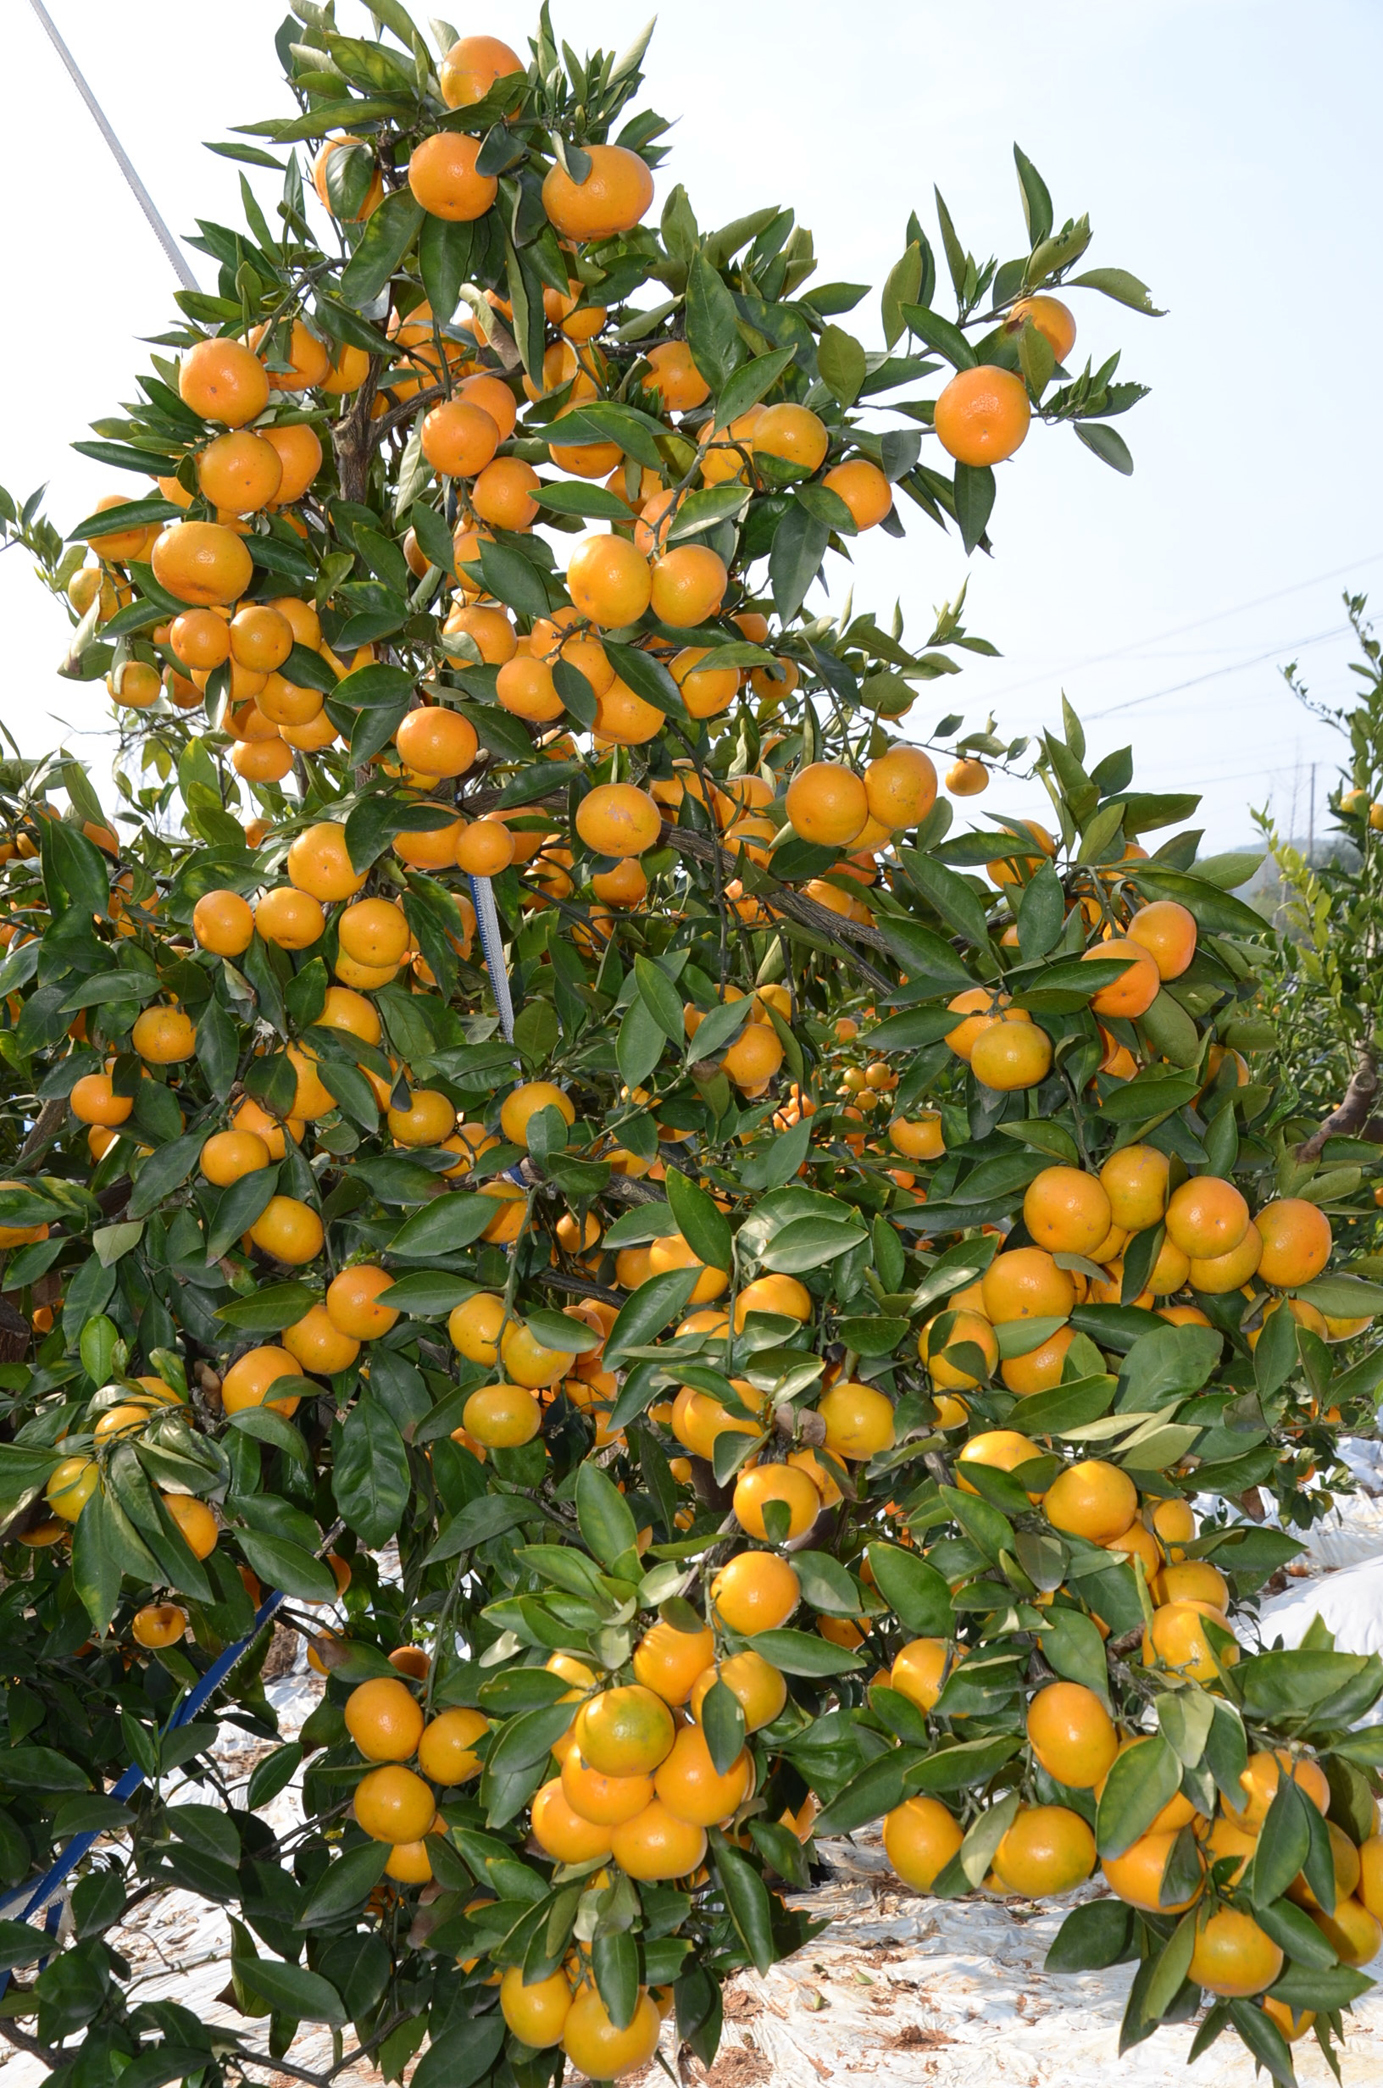 宜都蜜橘快卖完了土老憨的蜜橘还在树上加糖